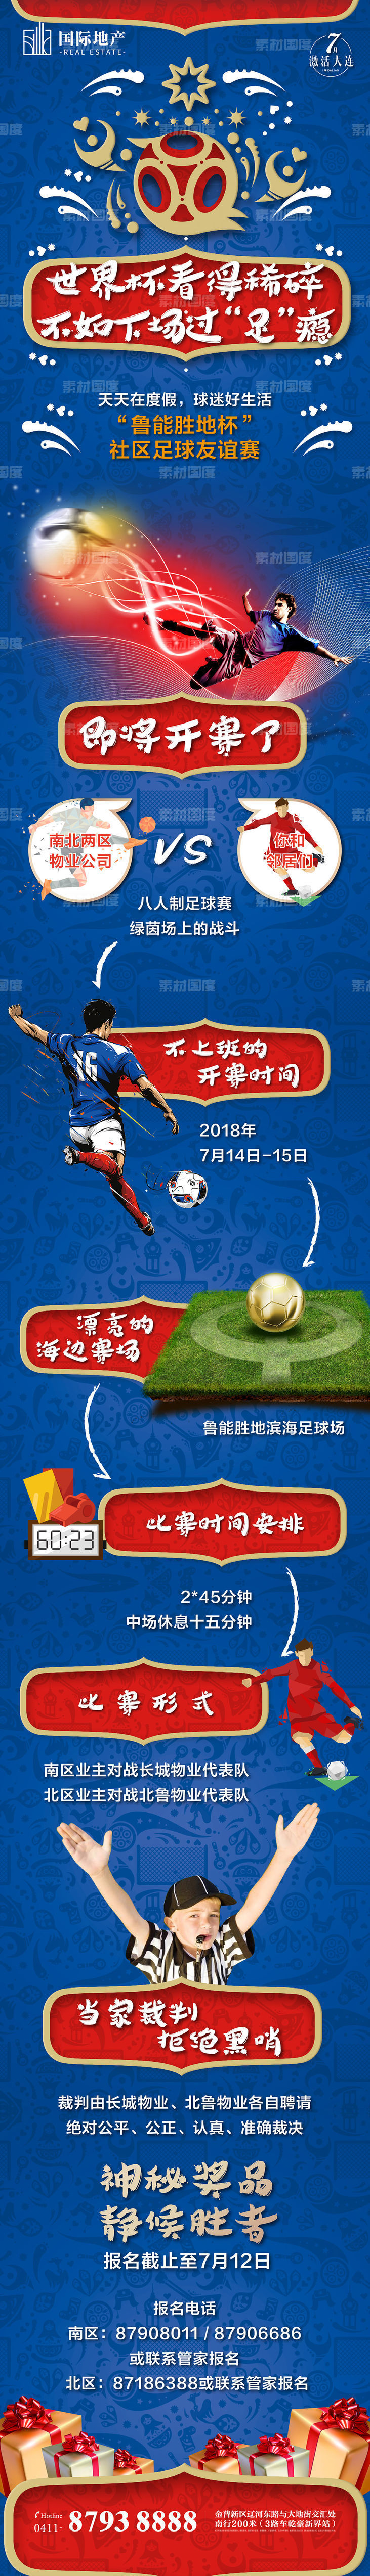 房地产世界杯足球赛活动宣传专题设计